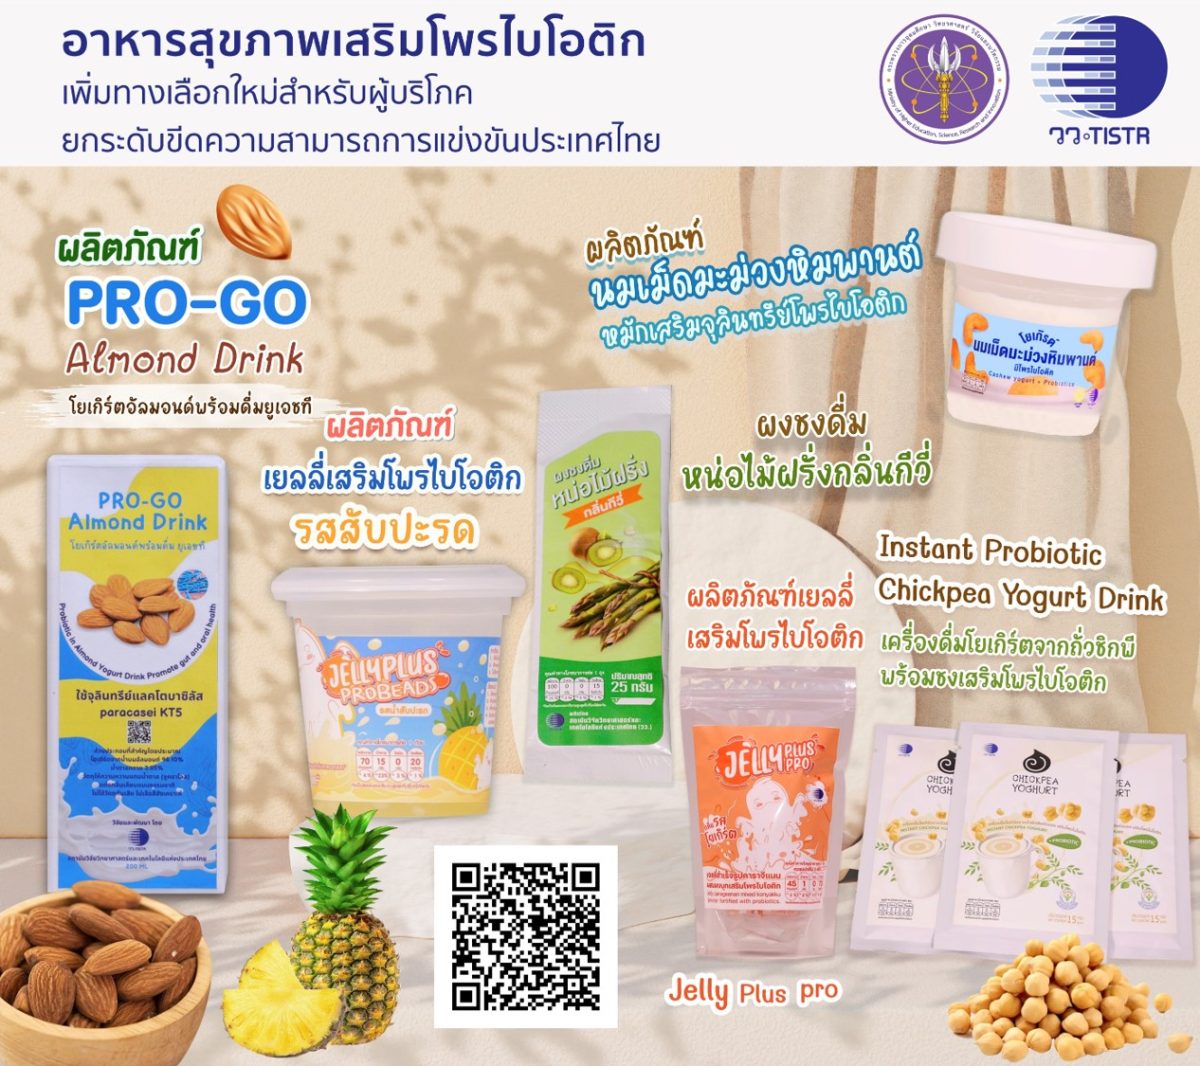 ศุภมาส สั่งการ วว. เสริมแกร่งผู้ประกอบการไทย ถ่ายทอดเทคโนโลยีการผลิต อาหารสุขภาพเสริมโพรไบโอติก สู่เชิงพาณิชย์ เพิ่มทางเลือกใหม่สำหรับผู้บริโภค